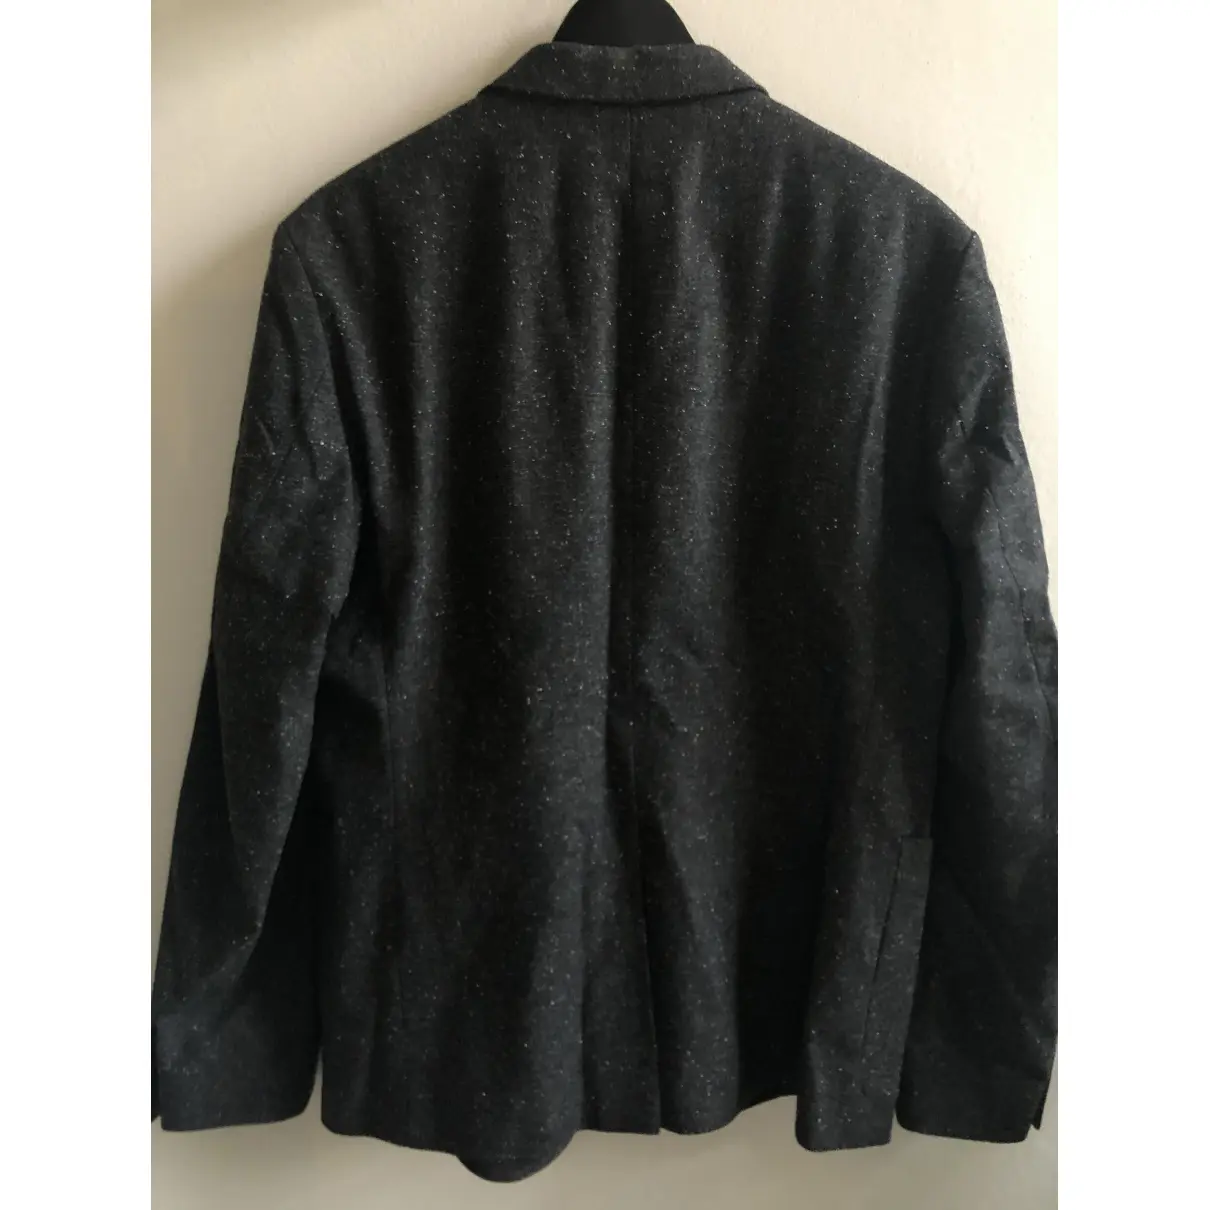 Buy Cos Wool jacket online